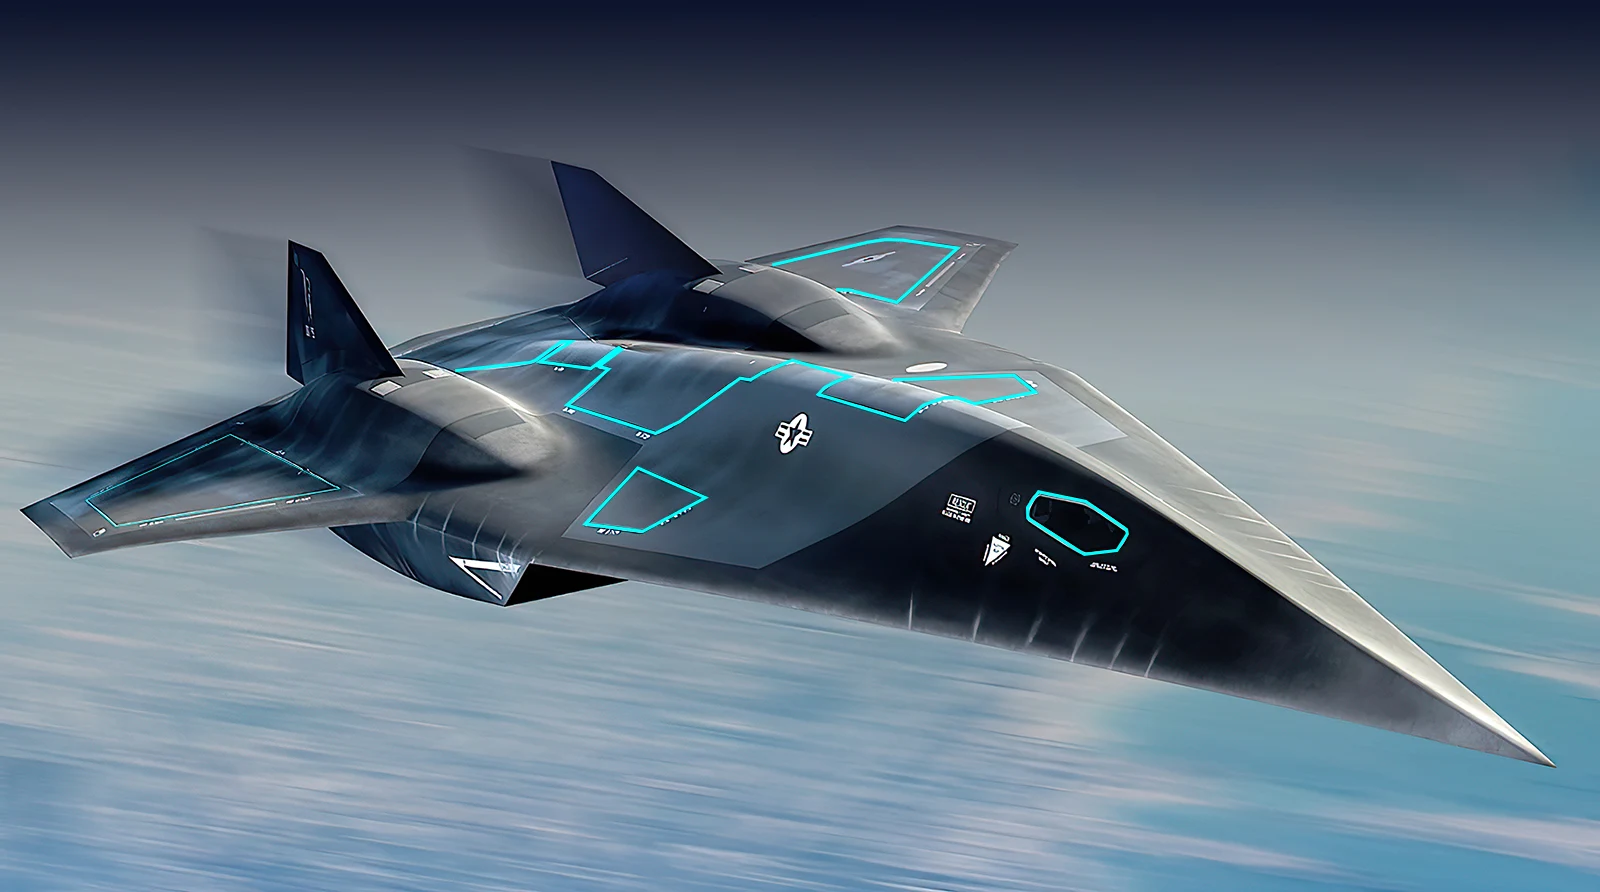 Skunk Works publica detalles sobre Top Gun: El avión hipersónico Darkstar de Maverick